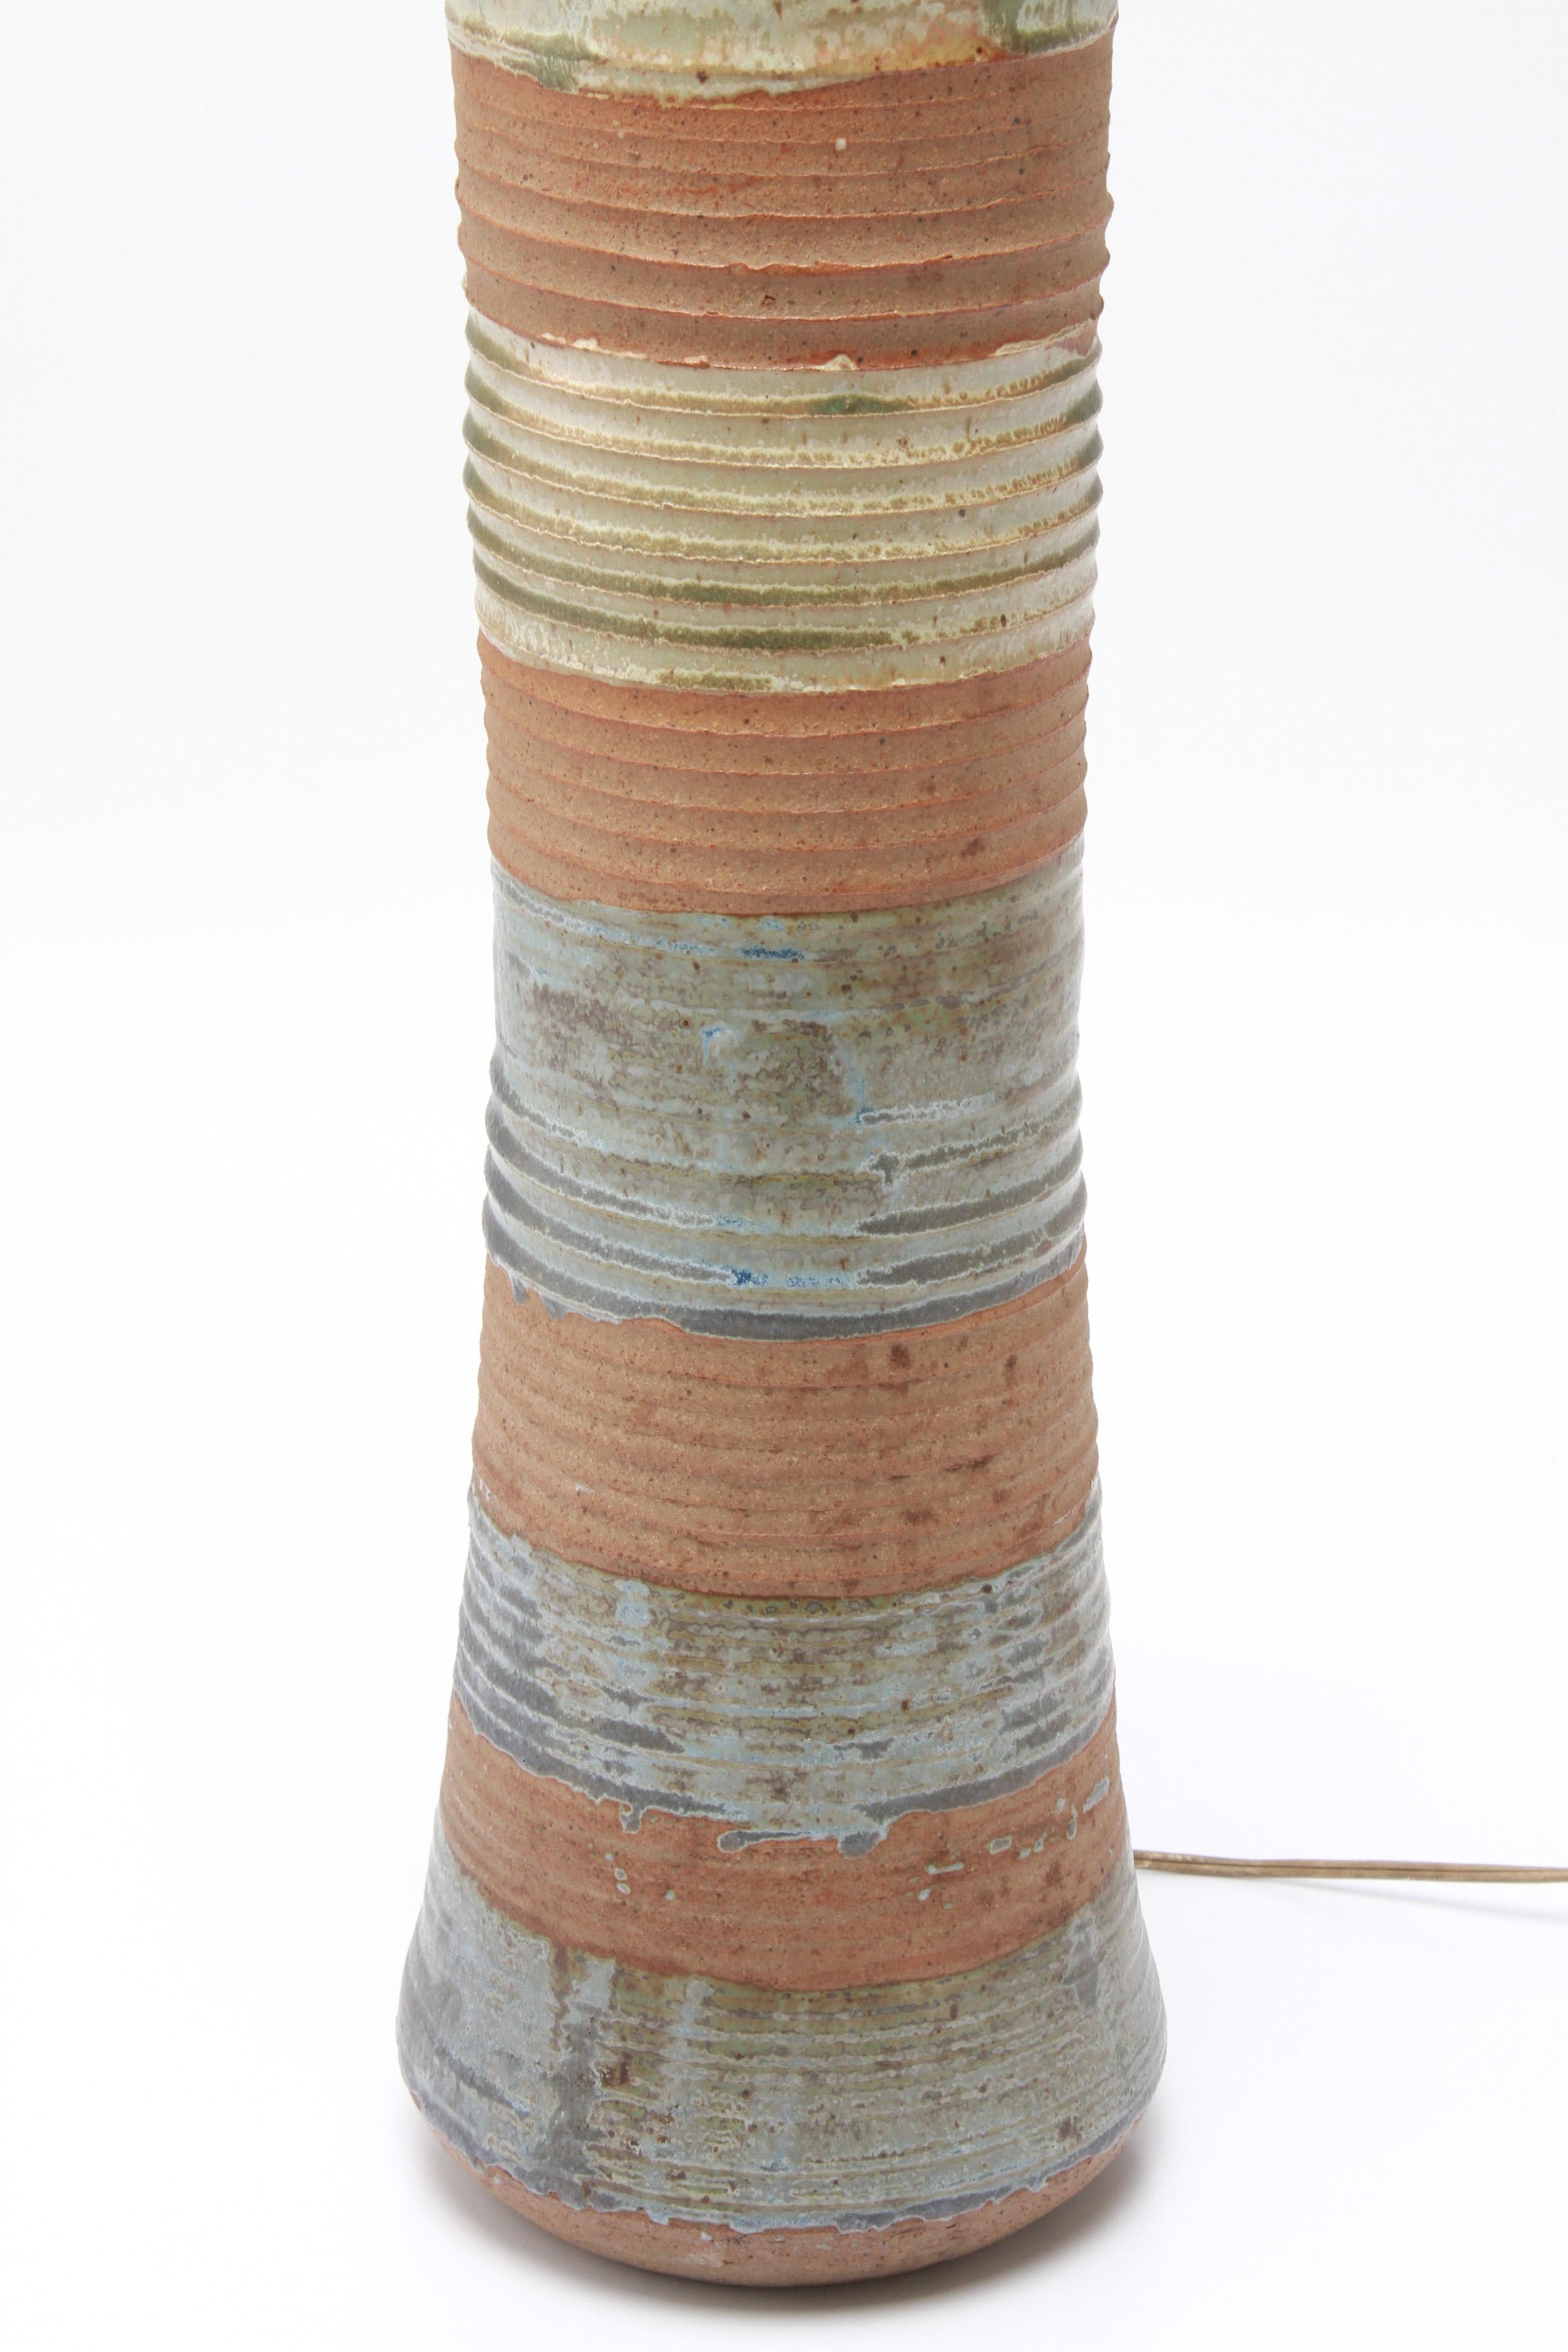 Amerikanische Mid-Century Modern Steingut Kunst Keramik Tischlampe entworfen von Karen Karnes, (Amerikaner, 1925-2016). Das Stück hat eine polychrome Glasur mit abwechselnden horizontalen Bändern und ist auf der Unterseite mit einem eingeprägten